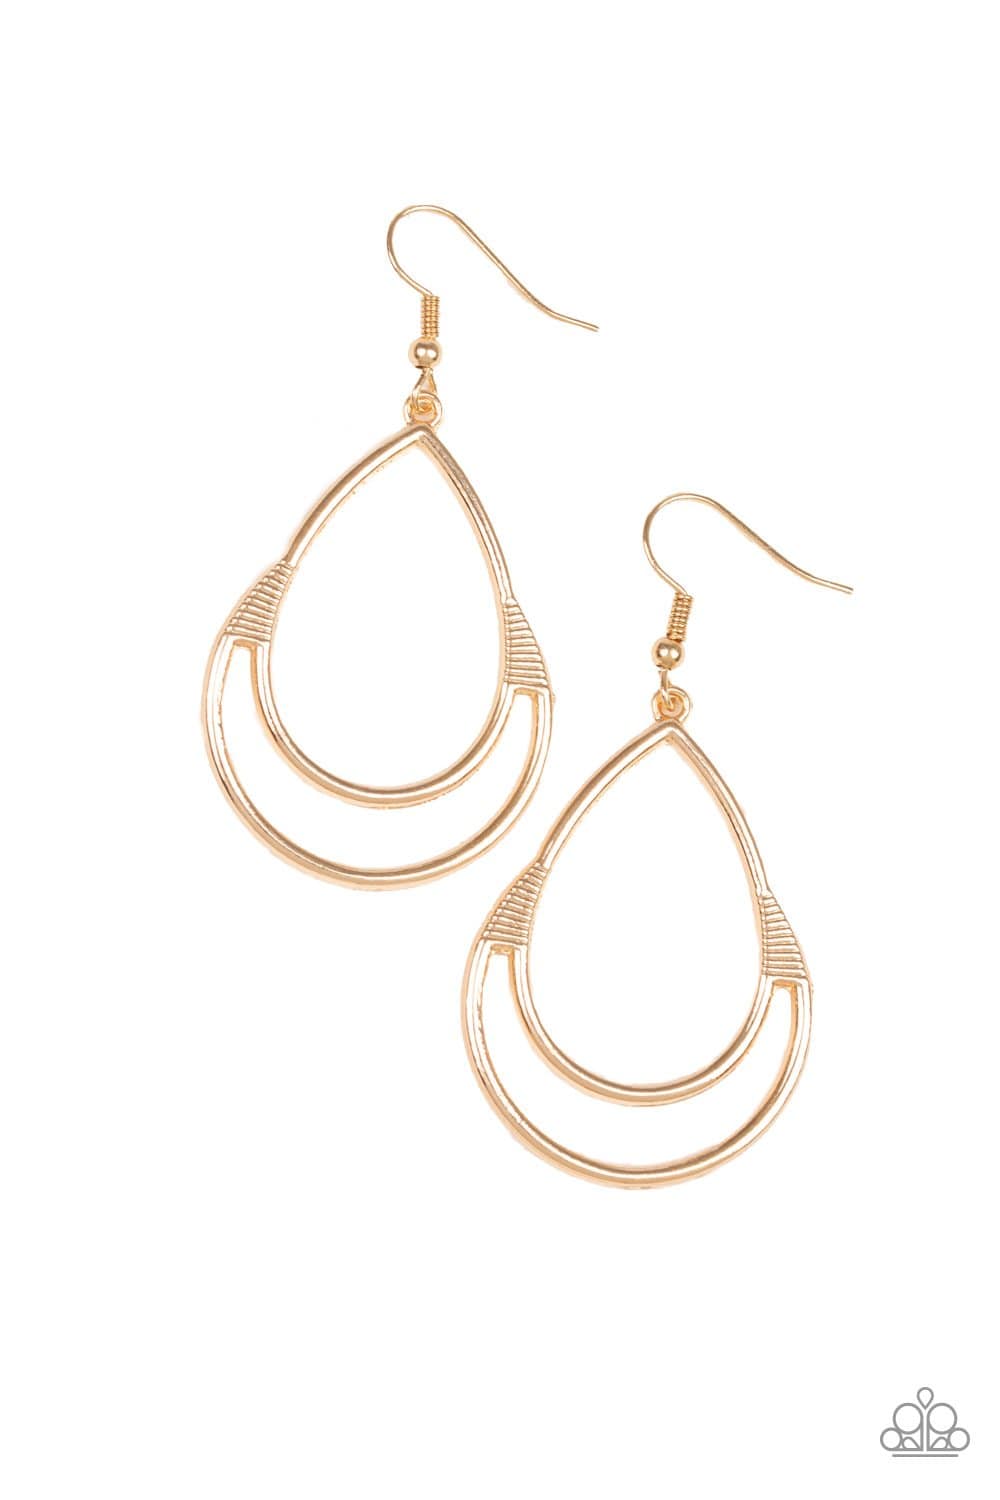 Simple Glisten - Gold Teardrop Earrings - Paparazzi Accessories - GlaMarous Titi Jewels